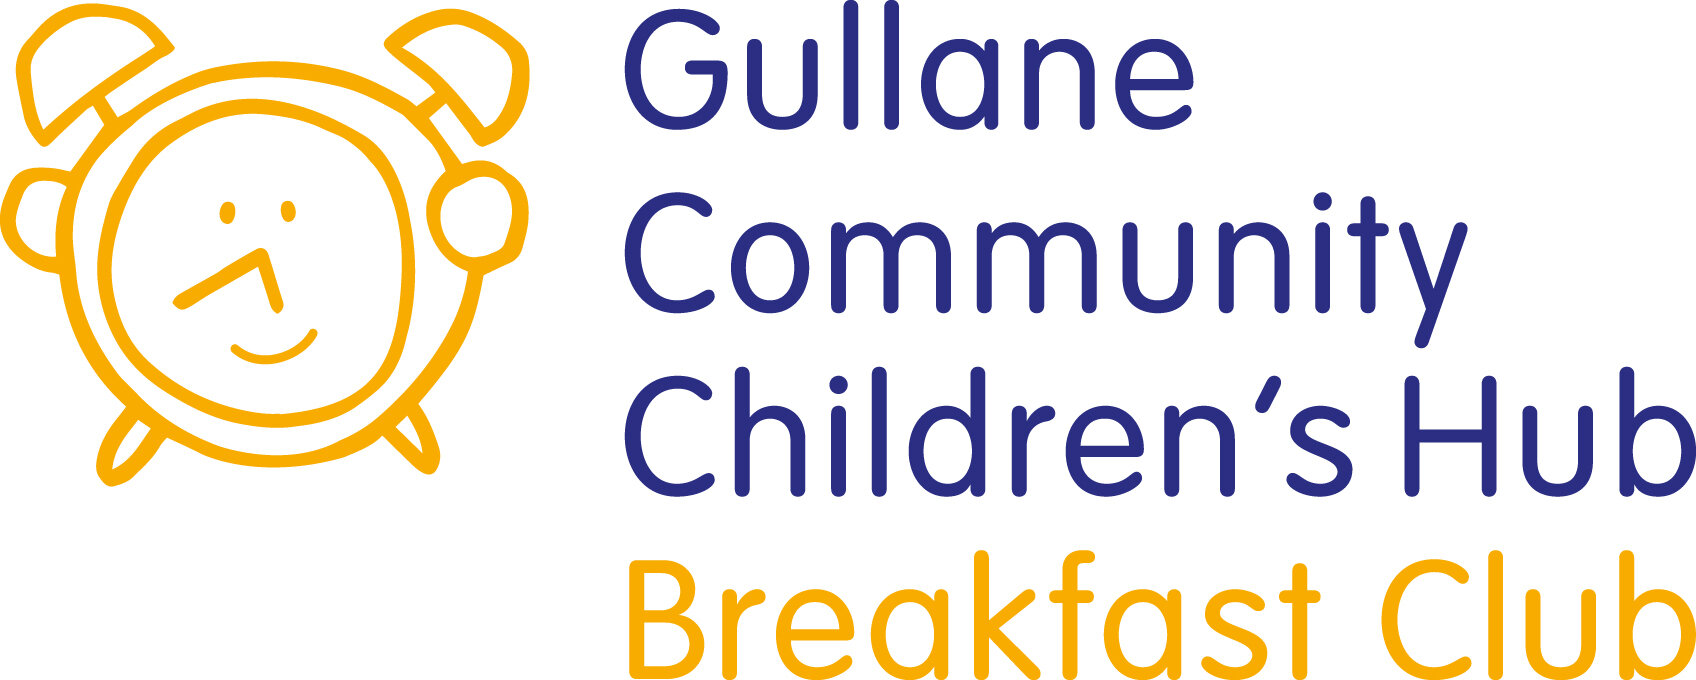 GCCH_Breakfastclub_Logo_colour.jpg